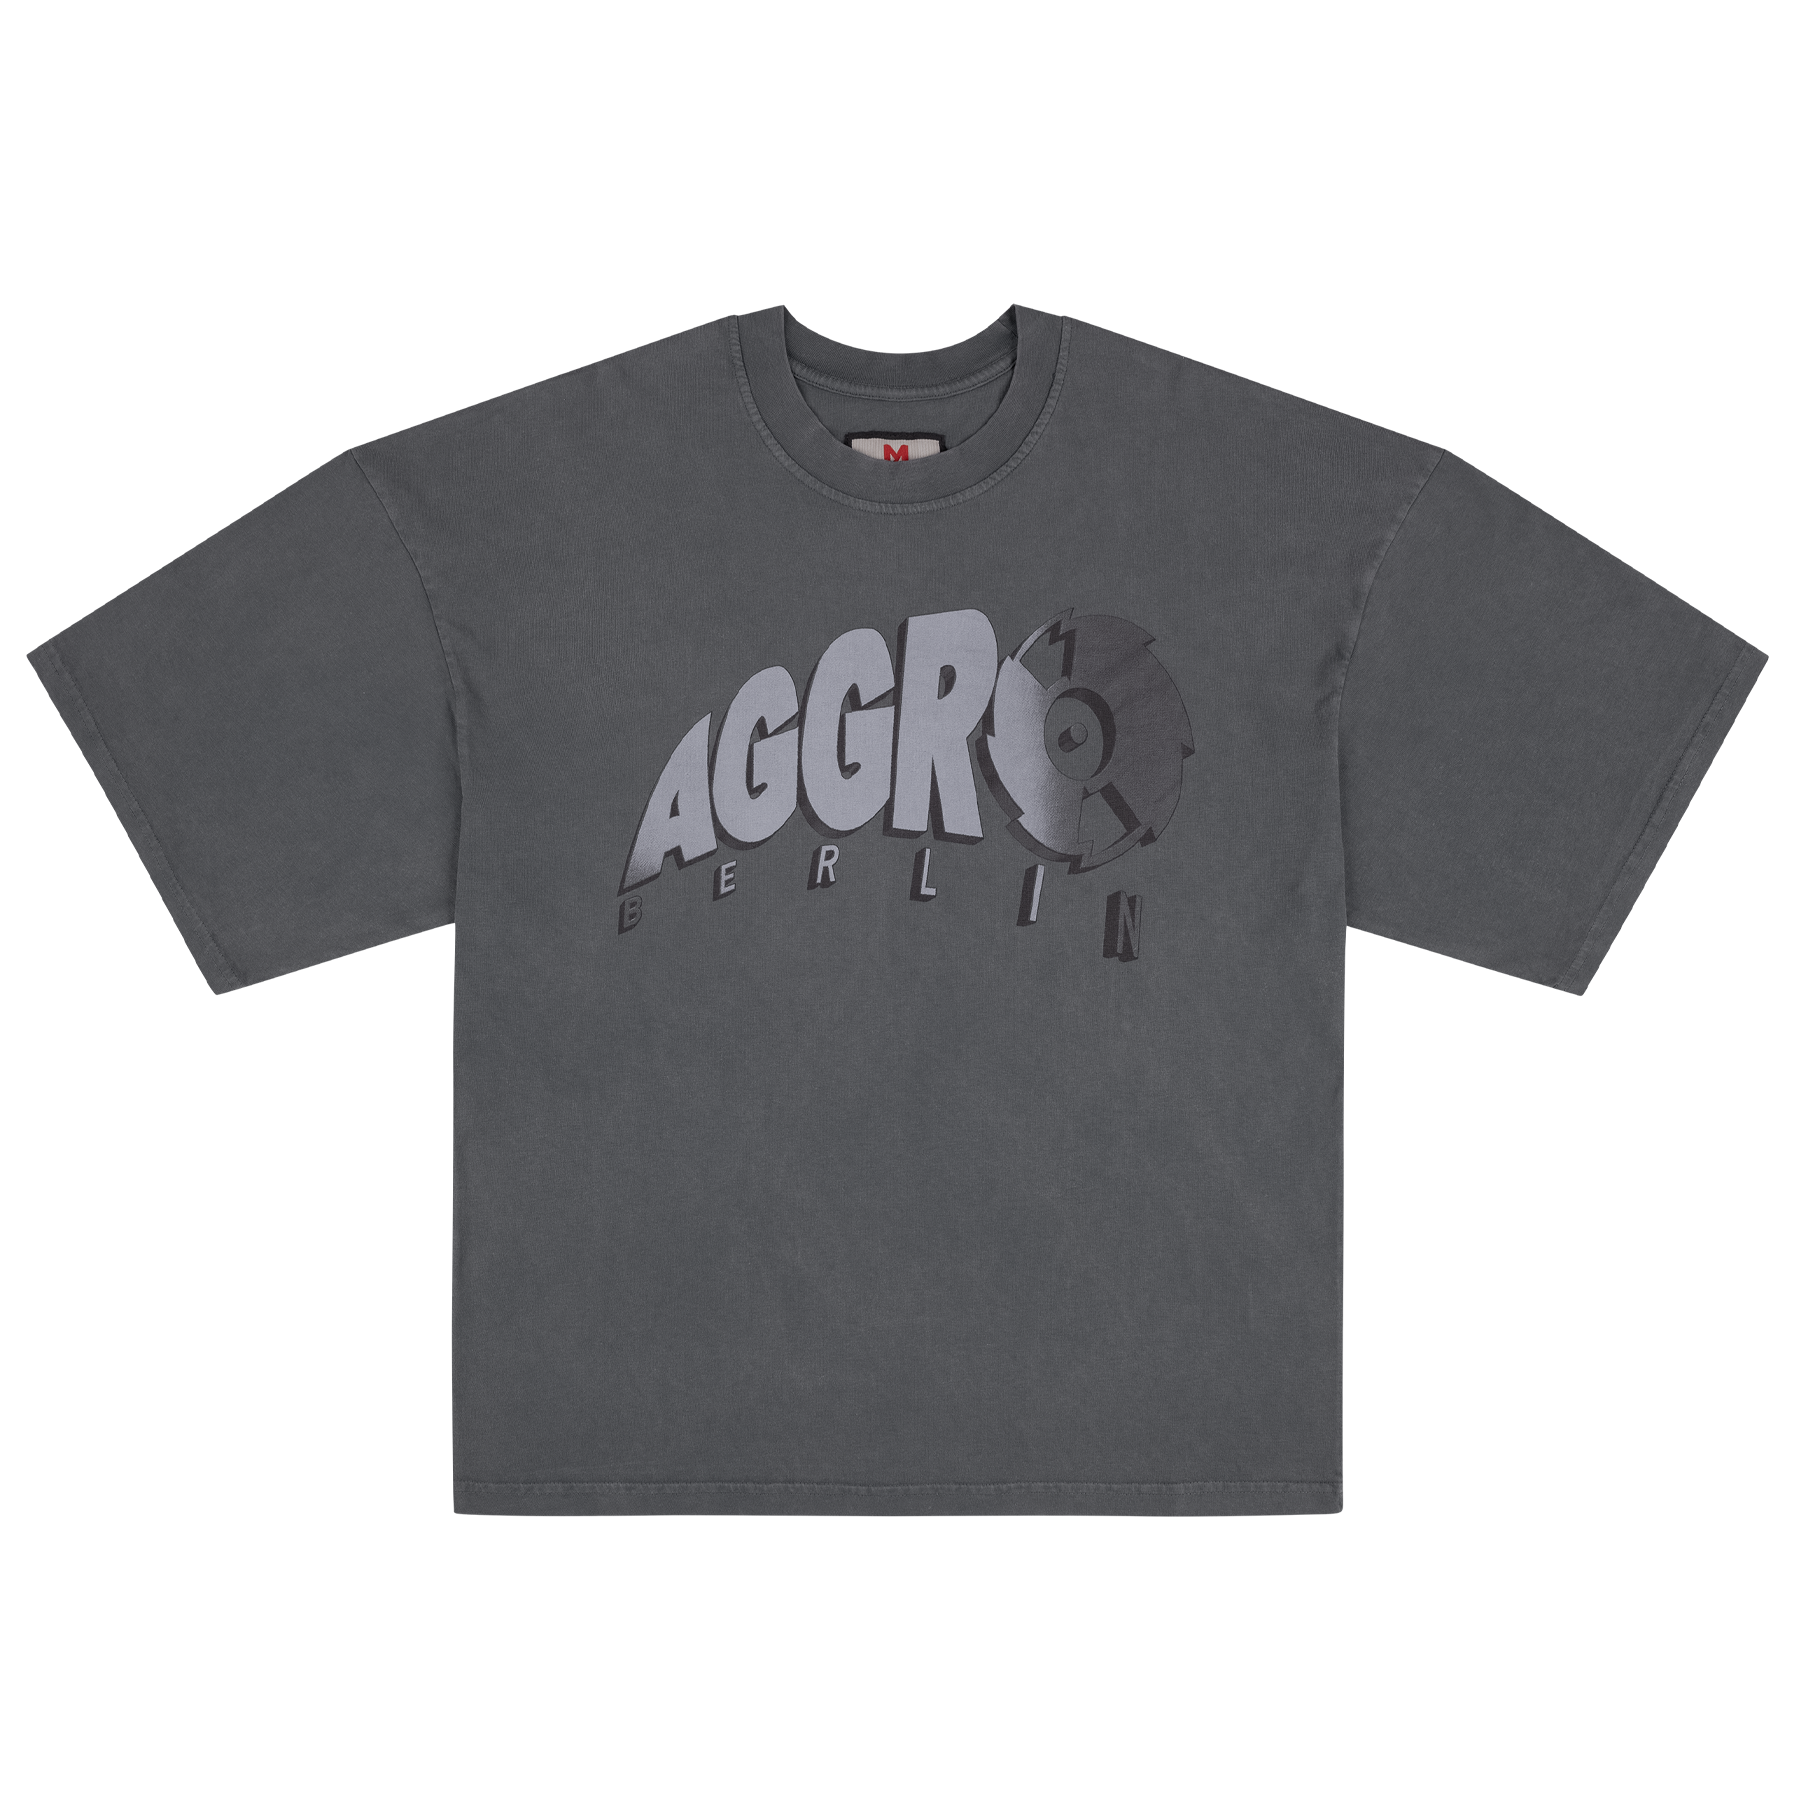 AGGRO Berlin - AGGRO Logo Maskulin Washed Edition